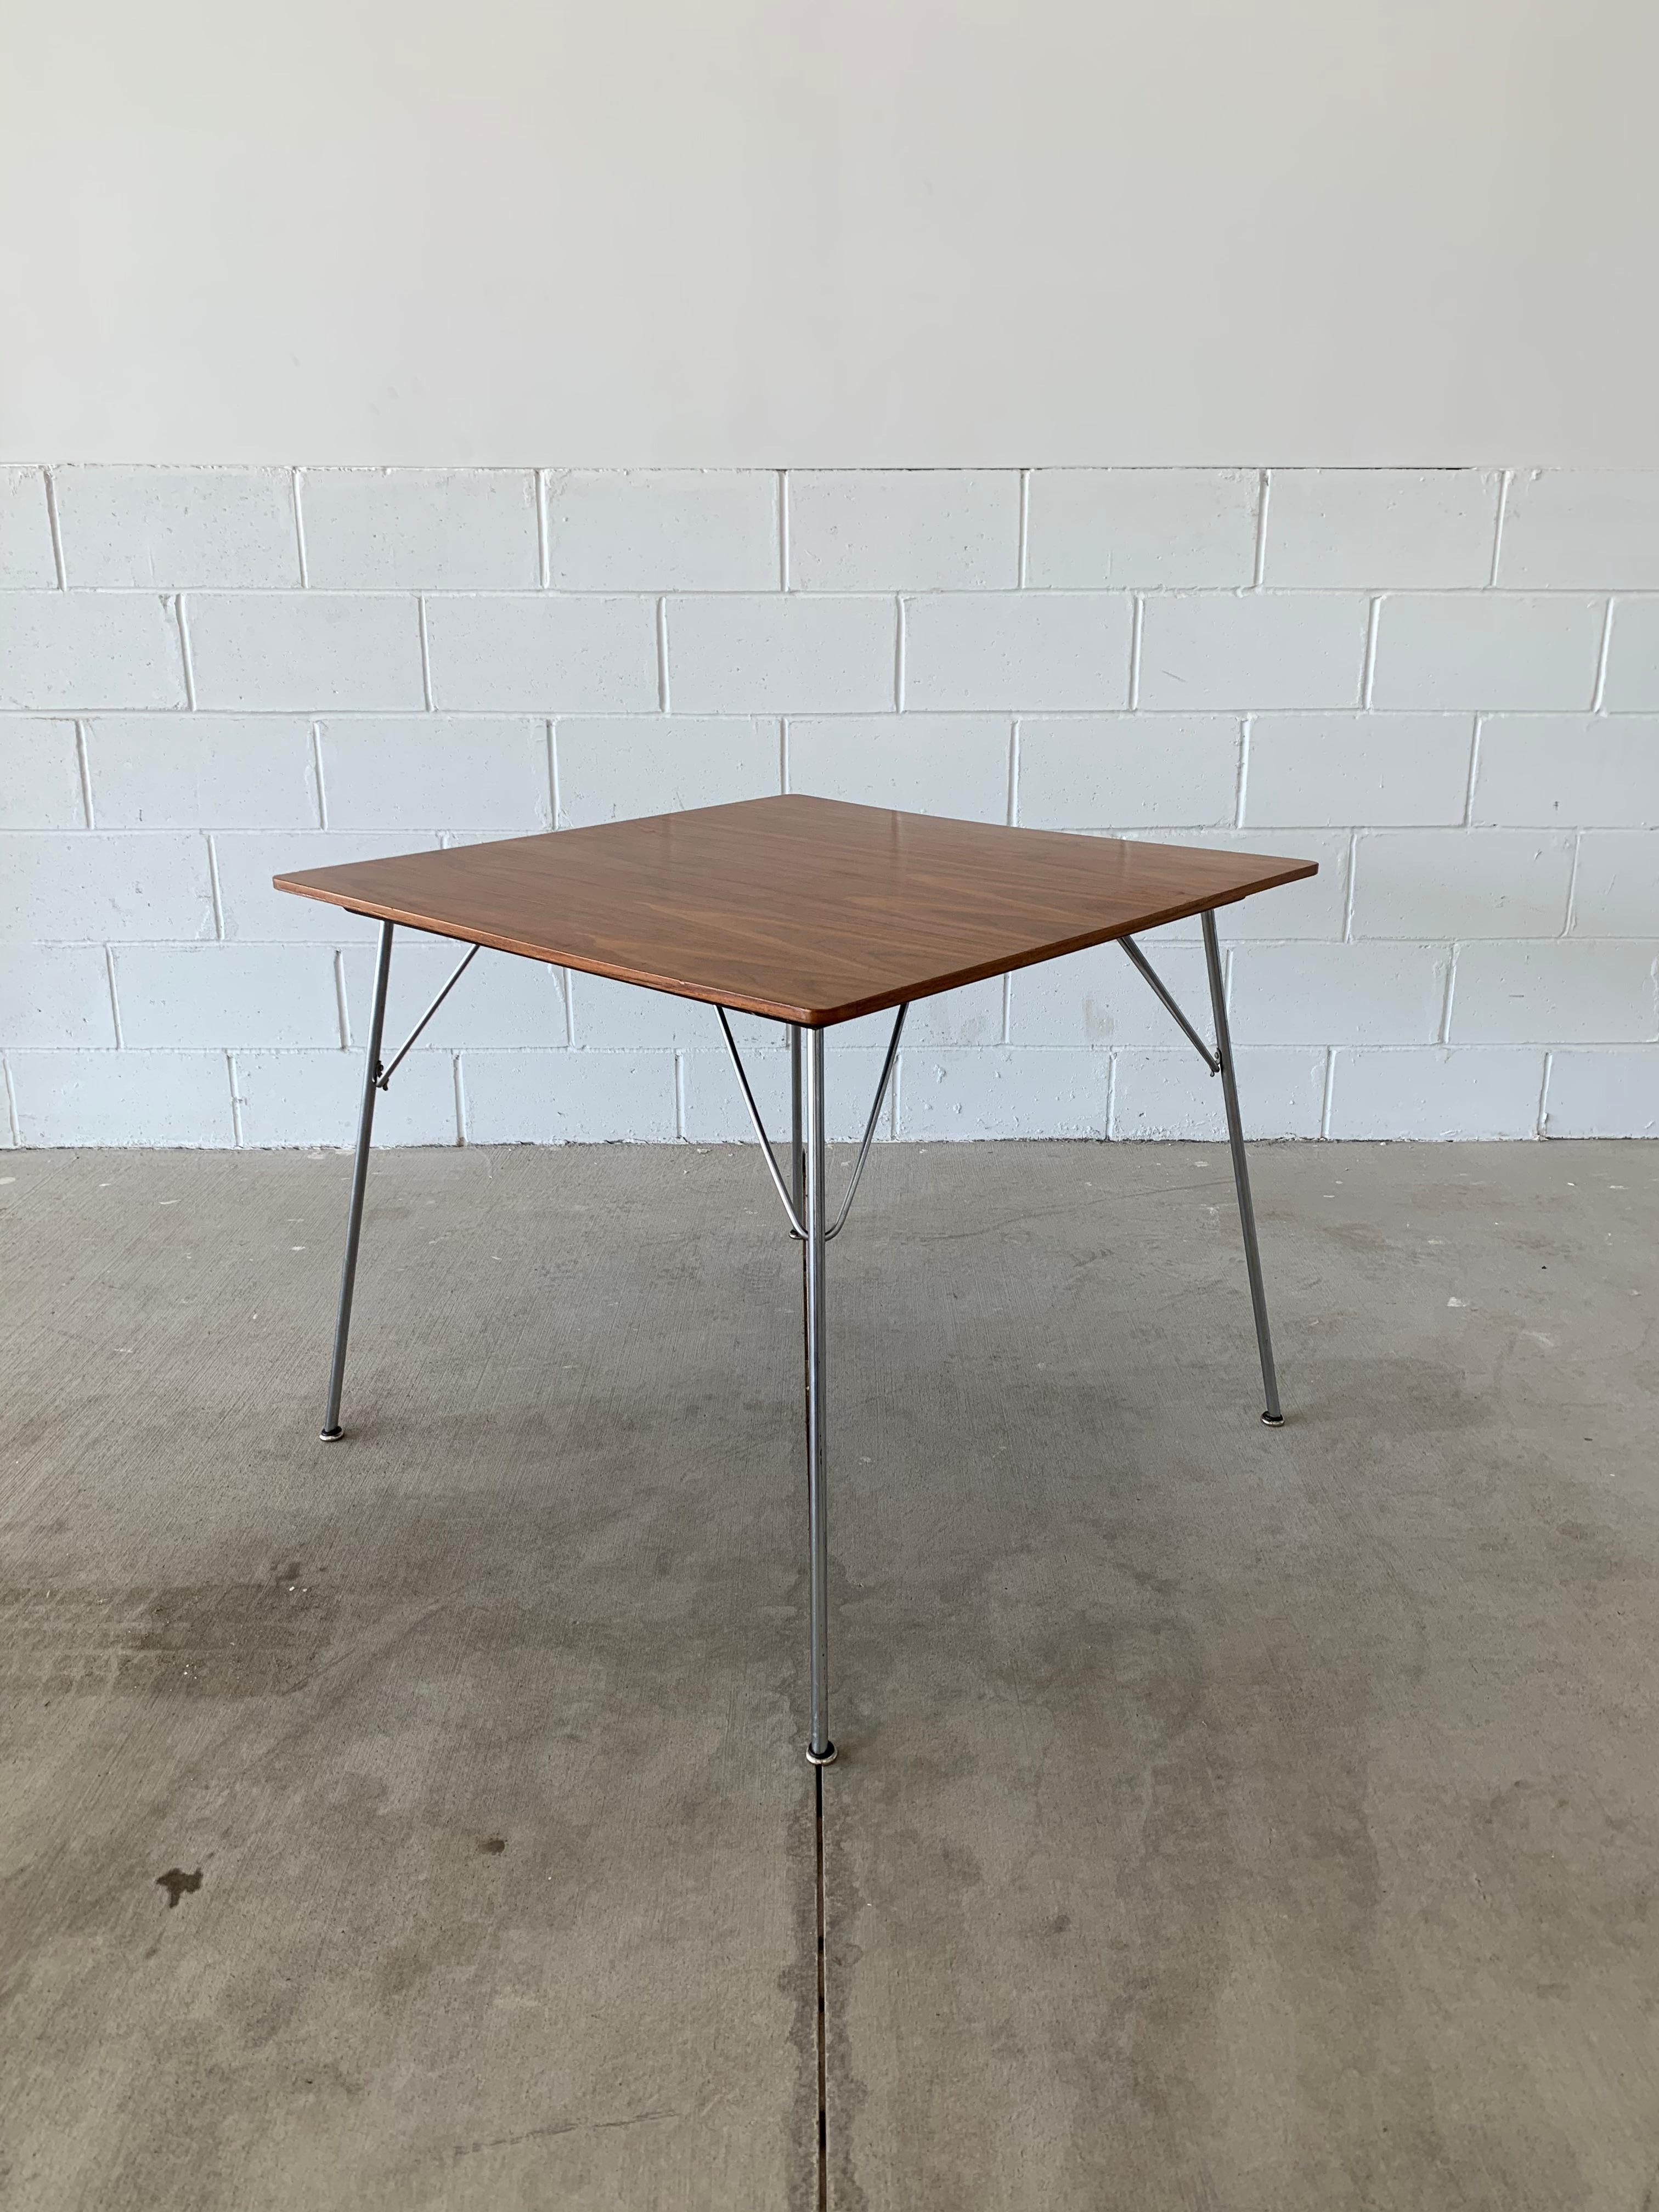 Dieser schöne Vintage DTM2 Tisch von Ray und Charles Eames ist eine beeindruckende Ergänzung für jedes Zuhause oder Büro. Er wurde von Herman Miller hergestellt und besteht aus einer Platte aus Walnussholz, einer schwarz lackierten Unterseite und